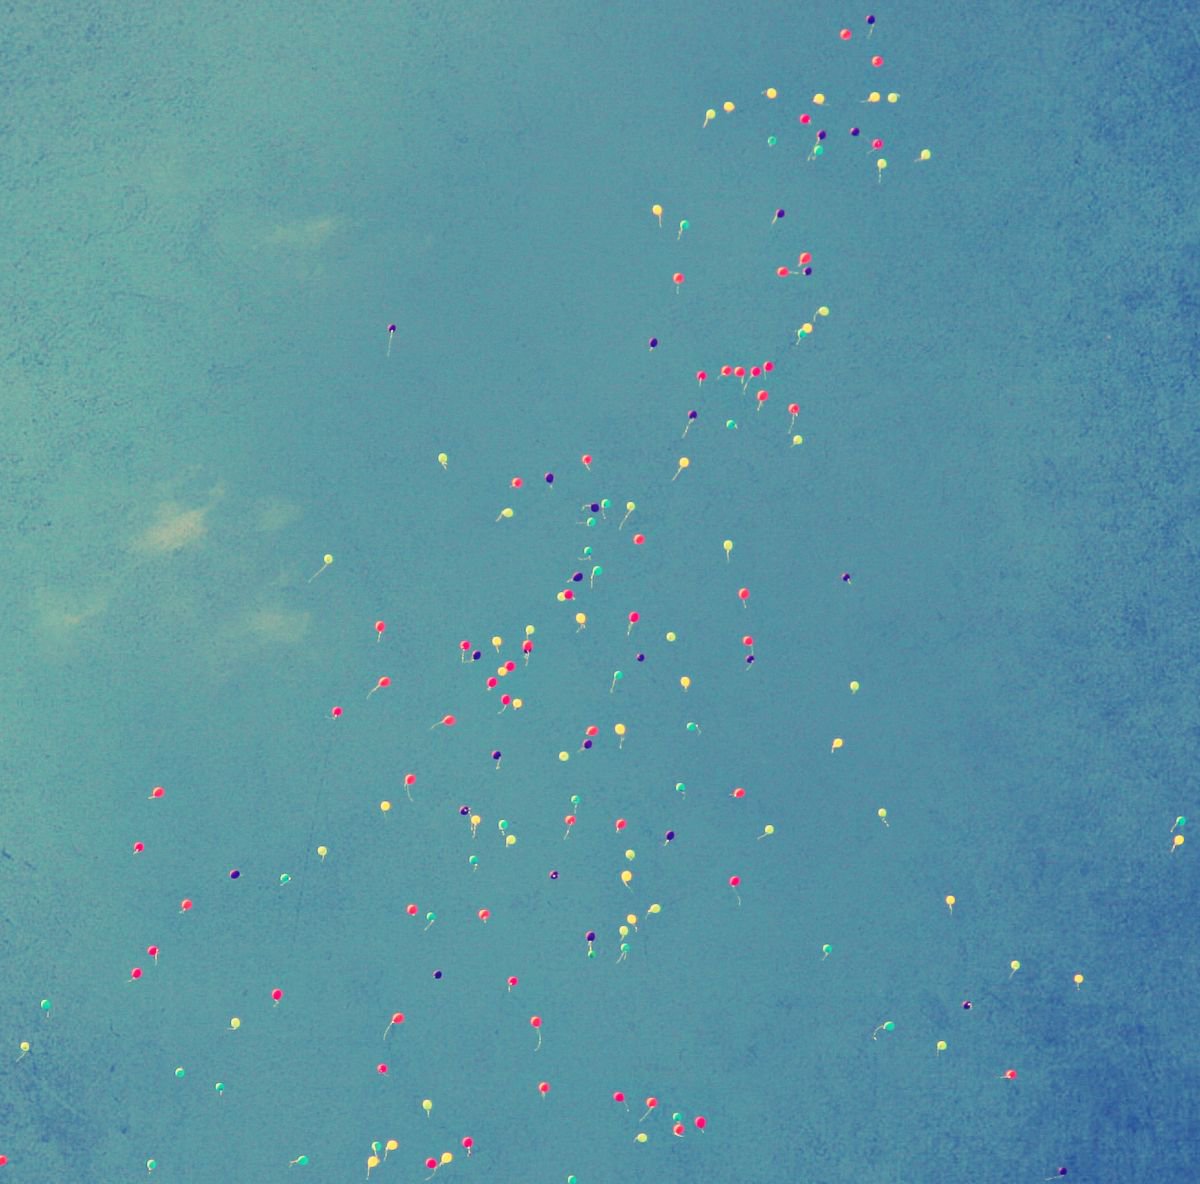 balloons of freedom by kos Nagy